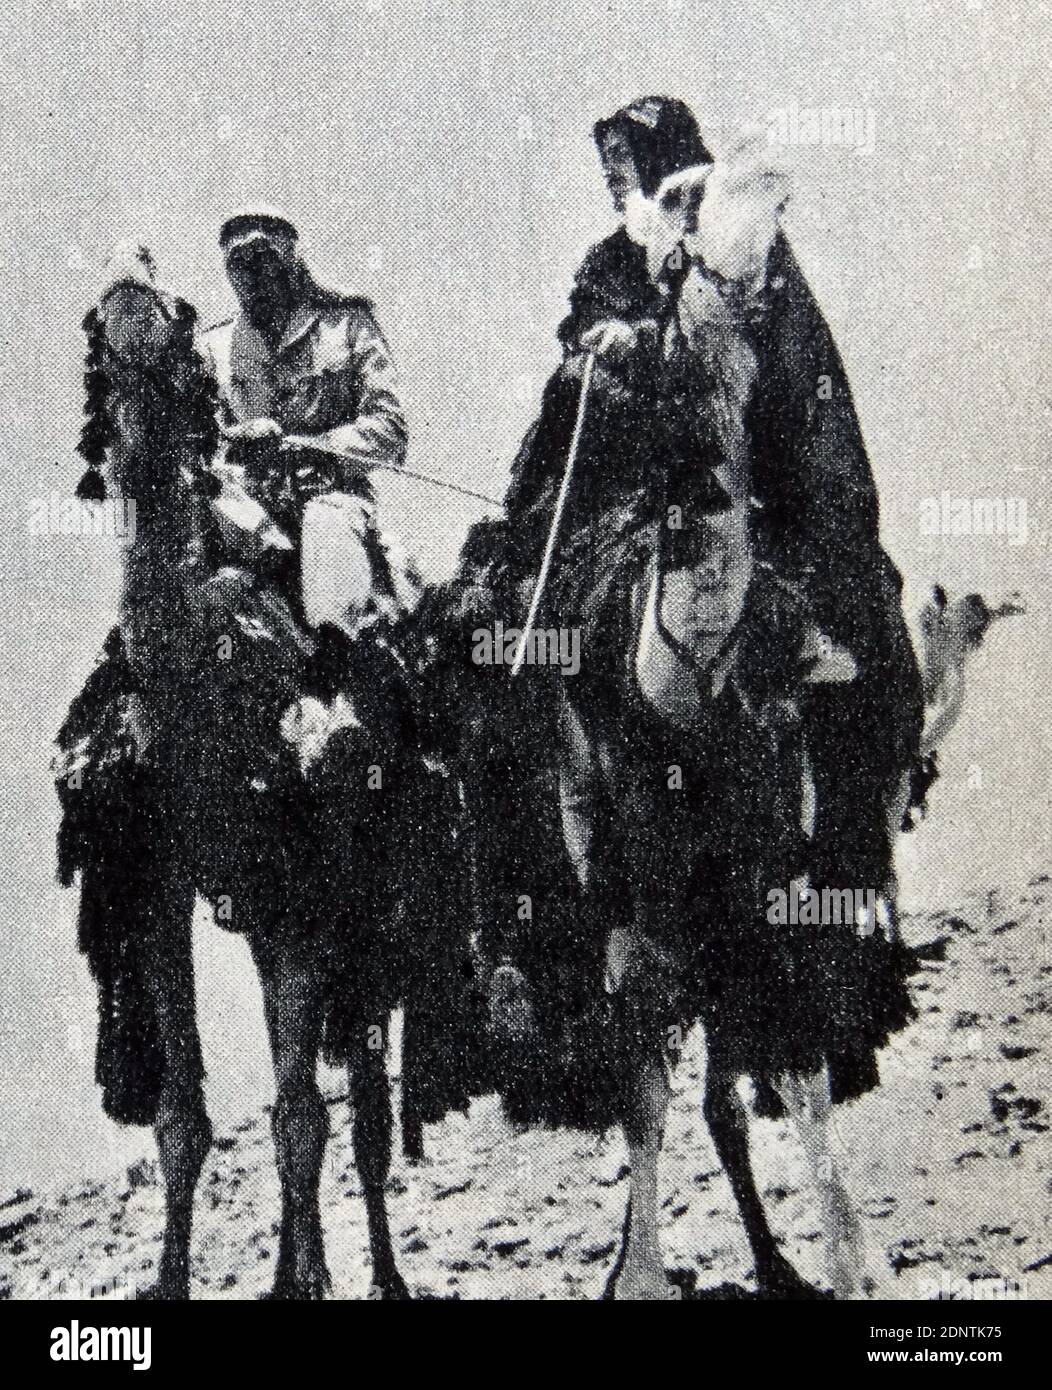 Filmstill von Peter O'Toole (1932-2013) und Alec Guinness (1914-2000) aus 'Lawrence von Arabien'. Stockfoto